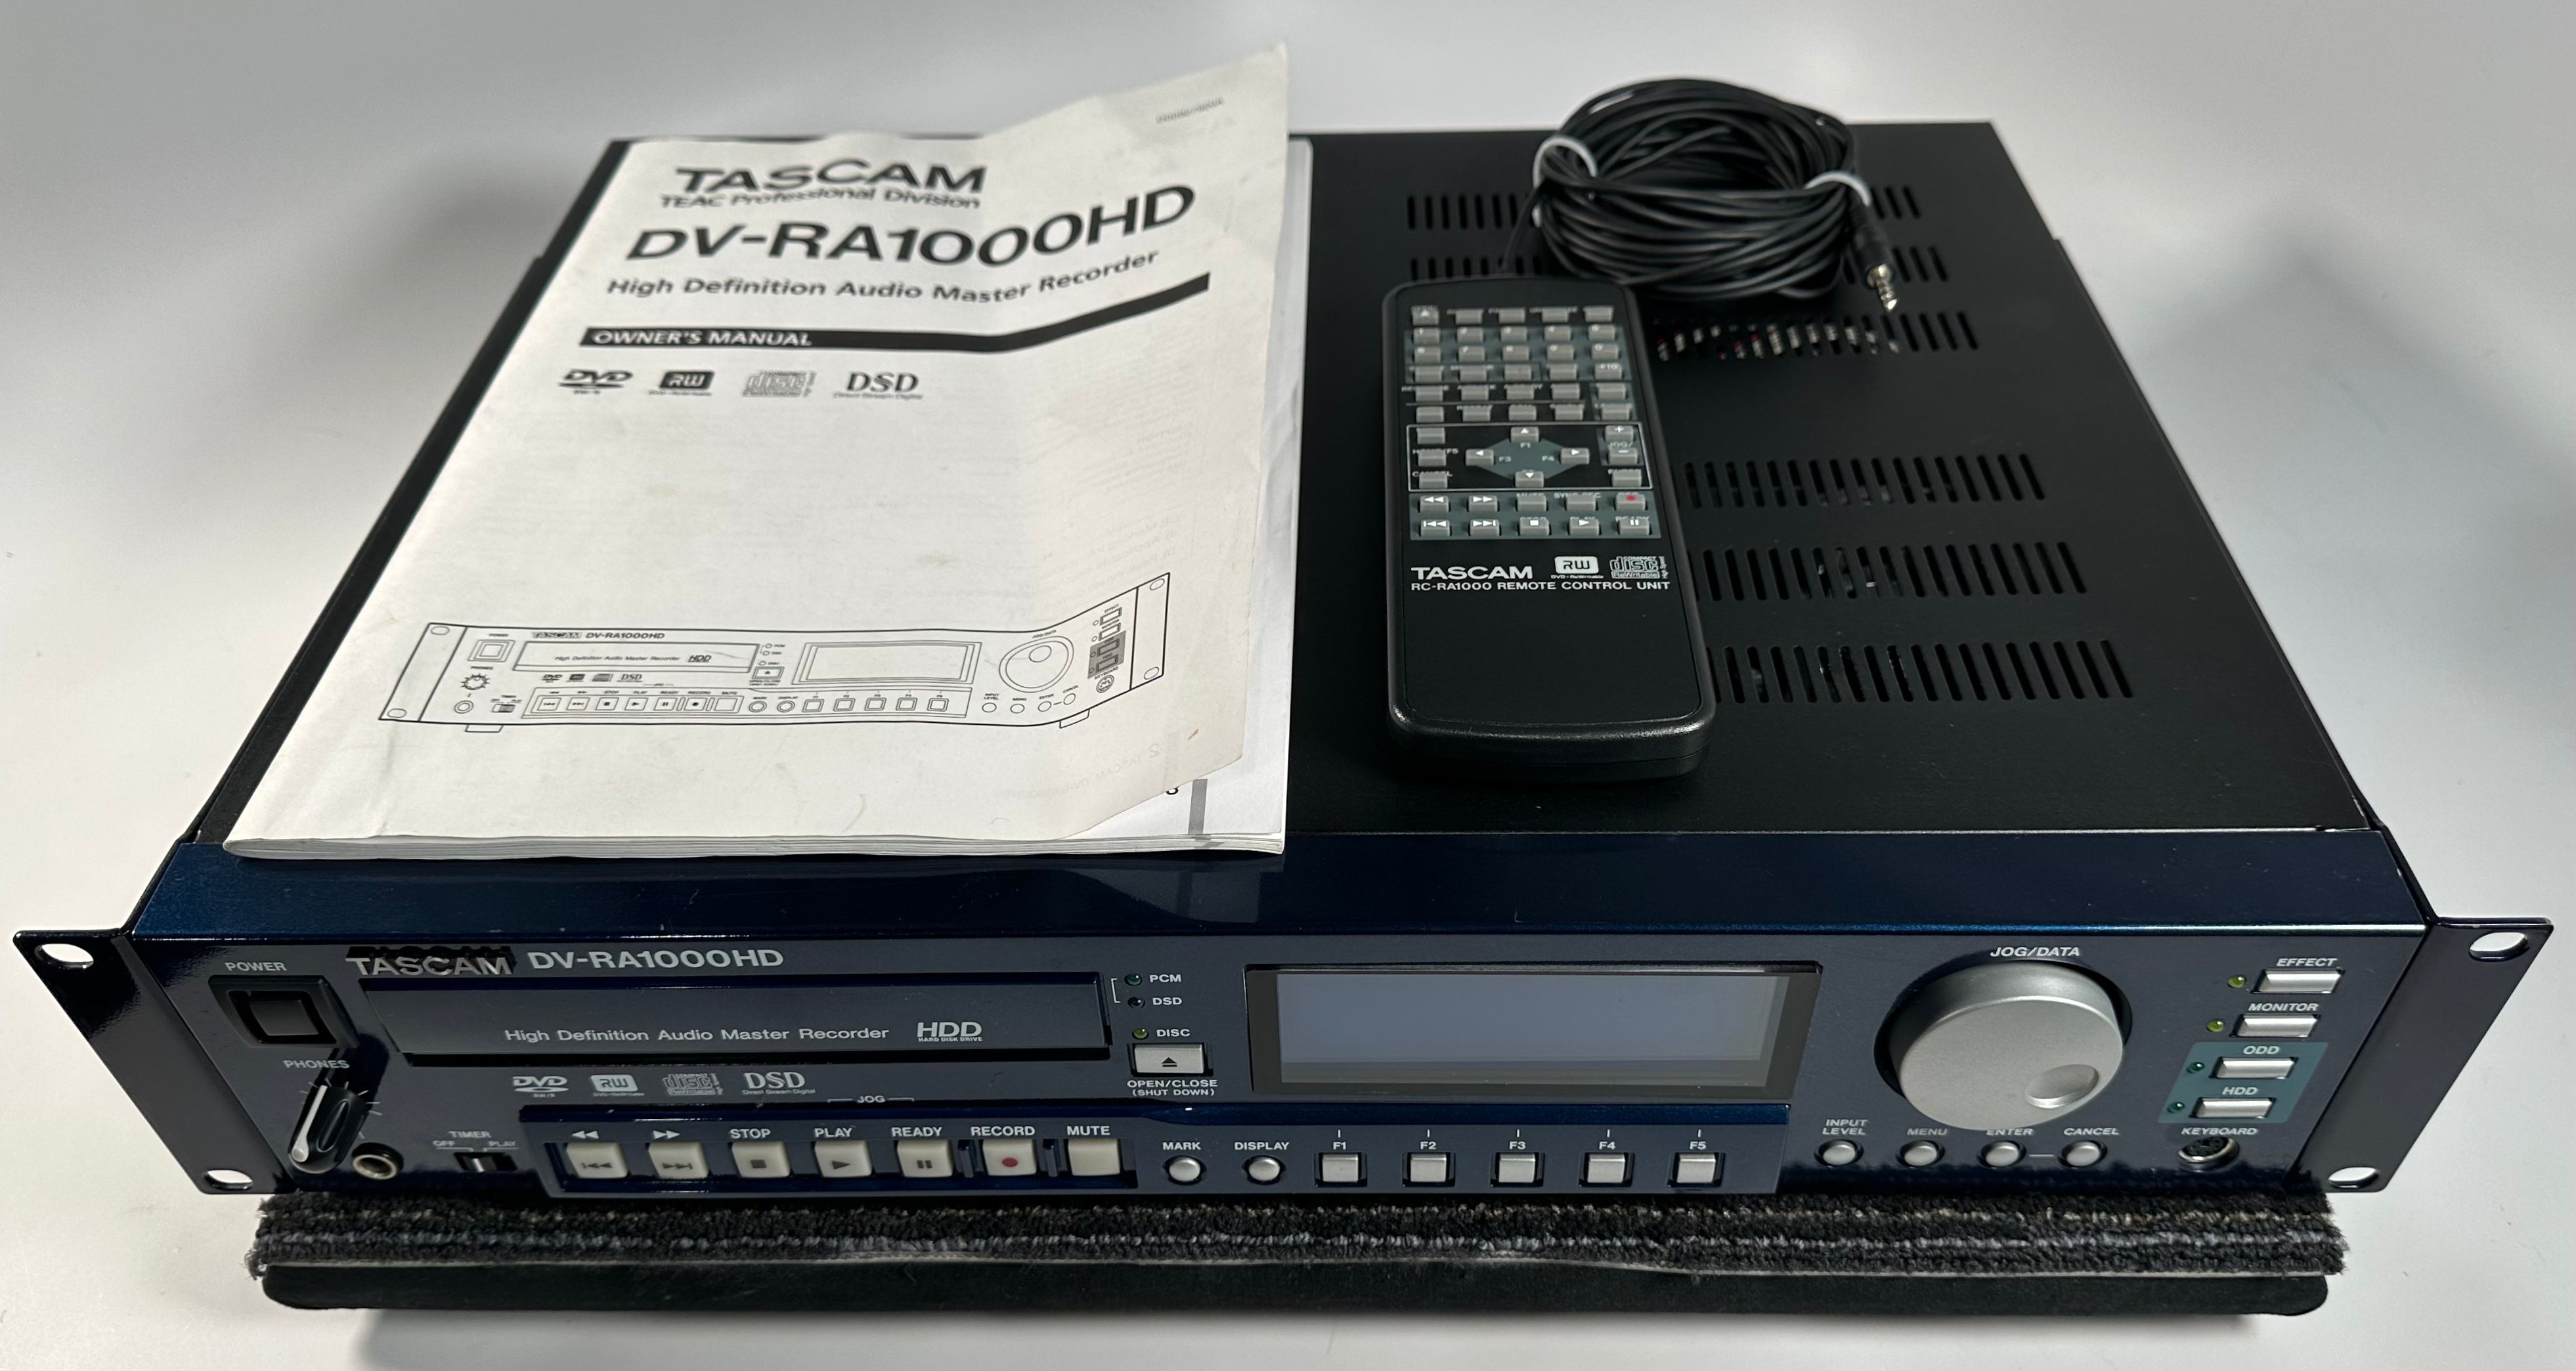 TASCAM DV-RA1000HD High-Definition Digital Audio Master Recorder w 